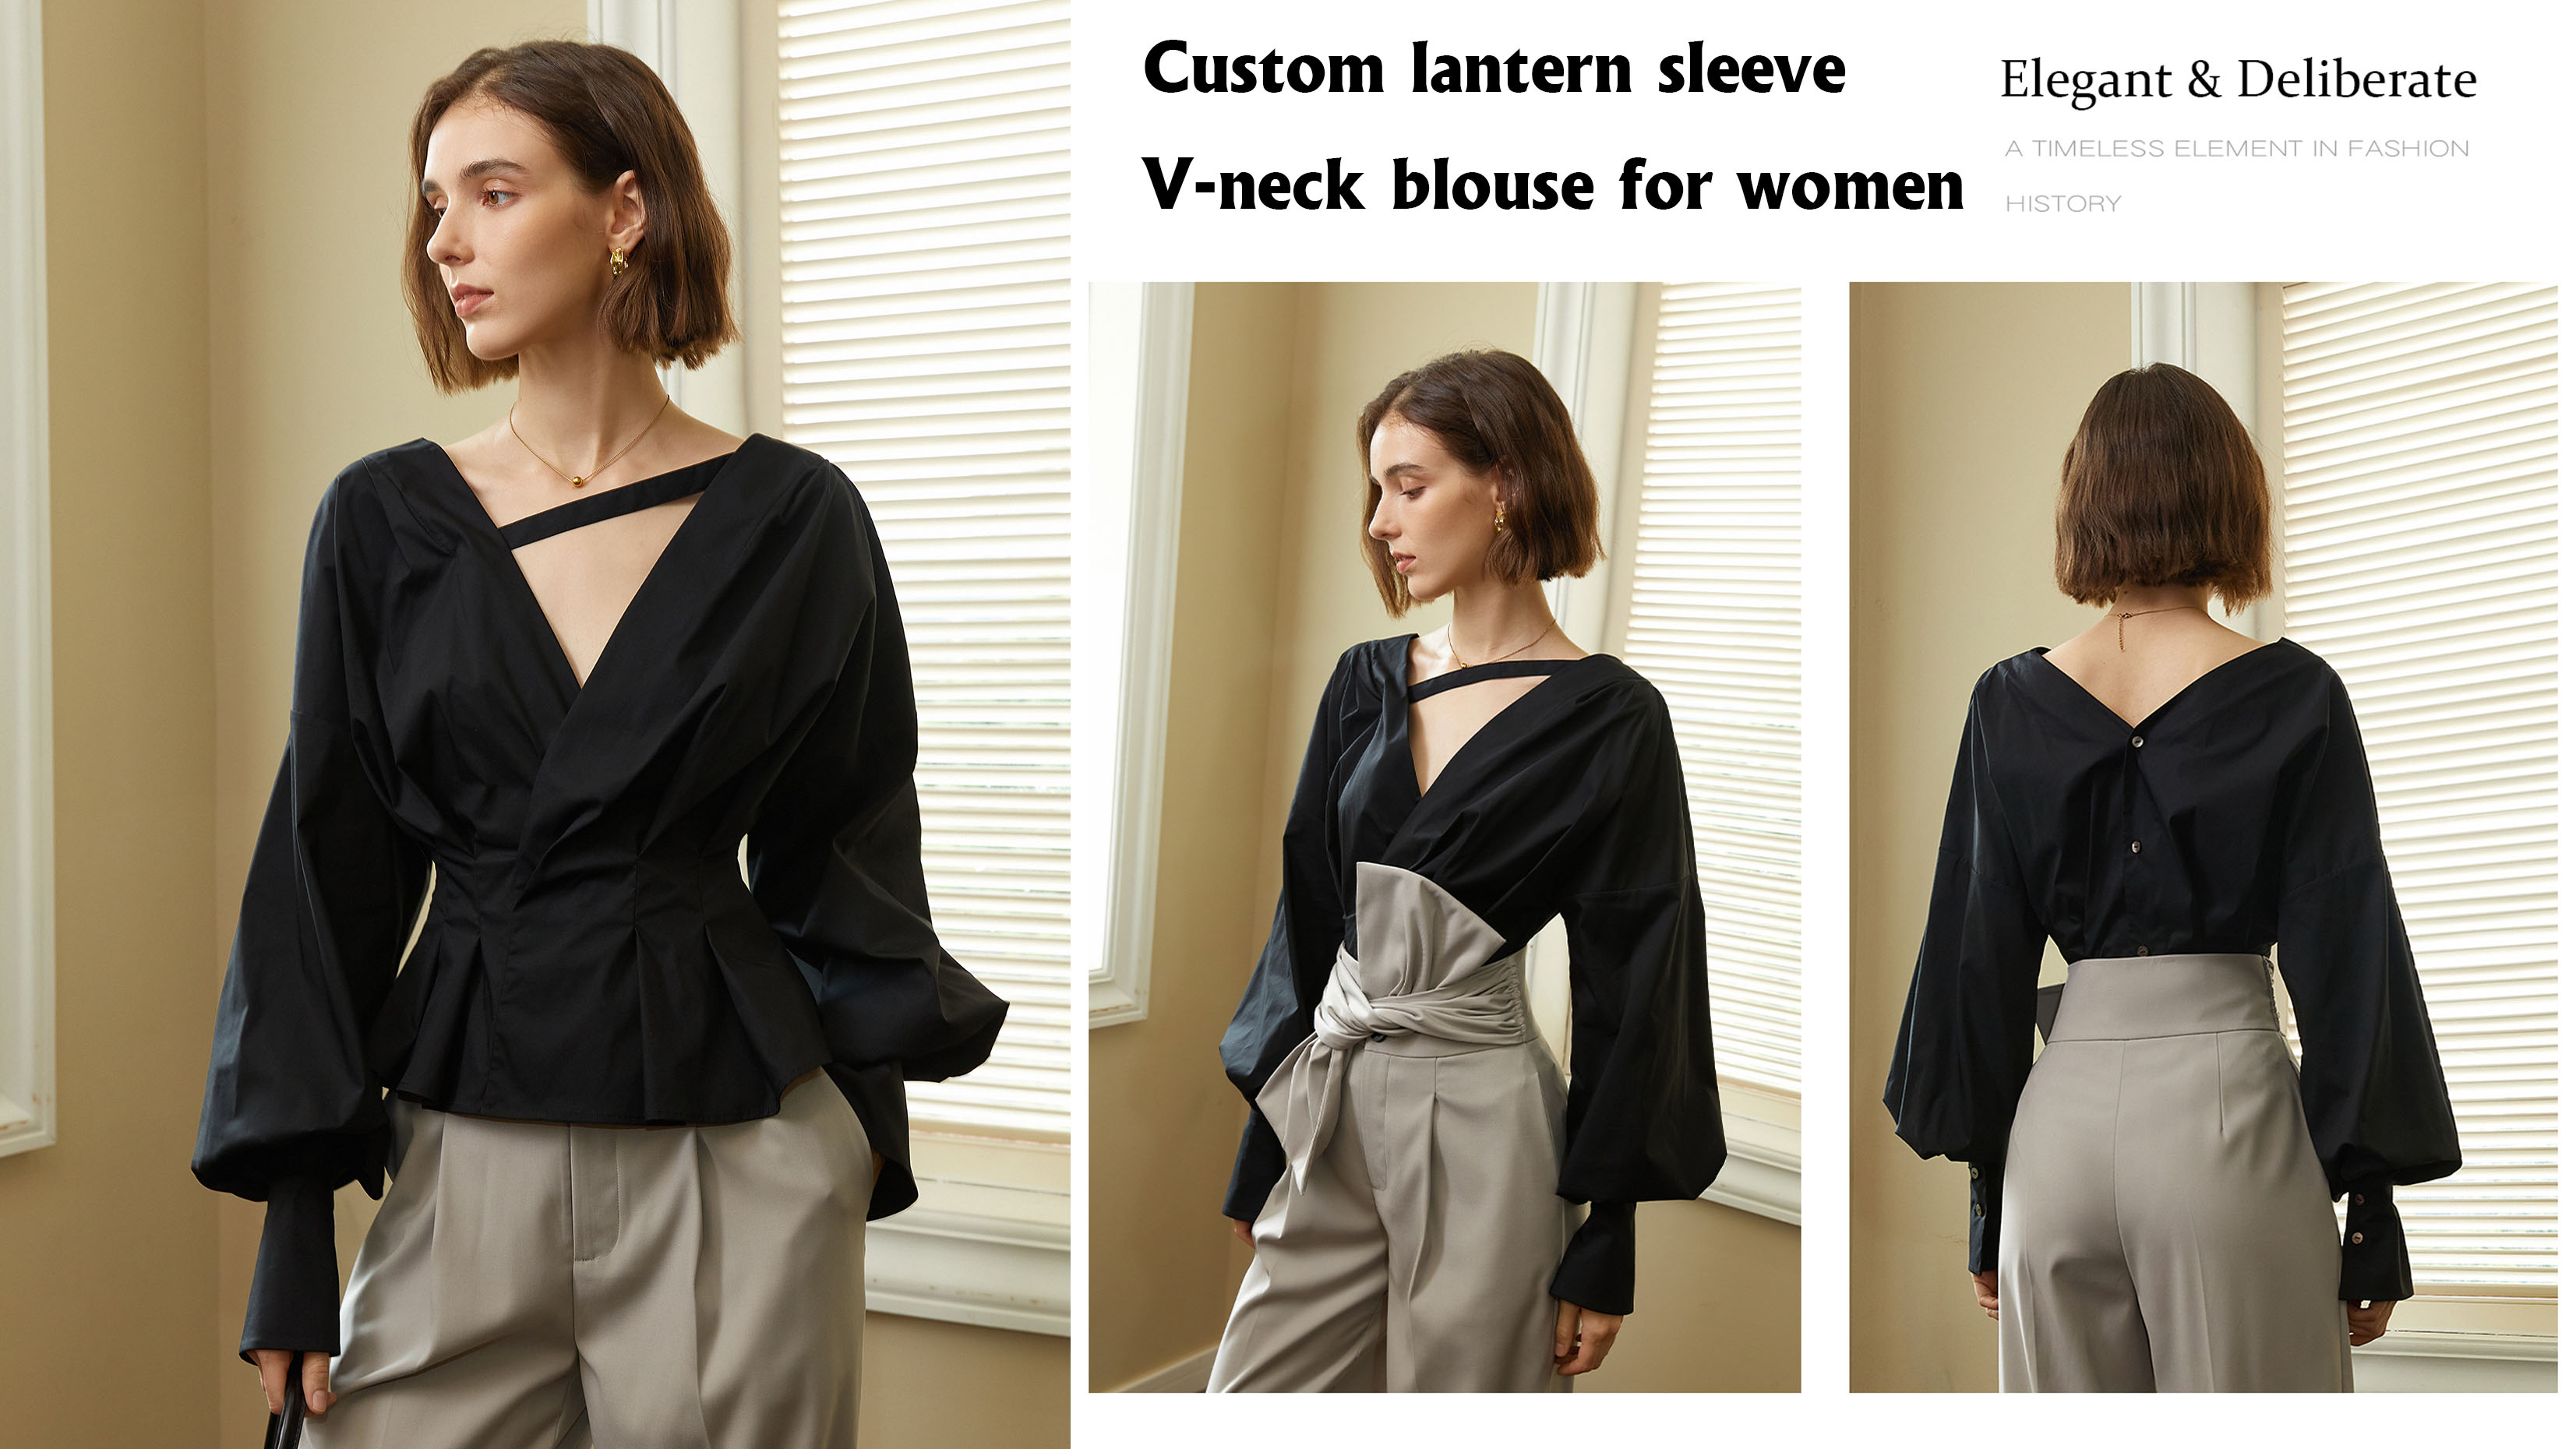 Custom na lantern sleeve V-neck blouse para sa mga babae